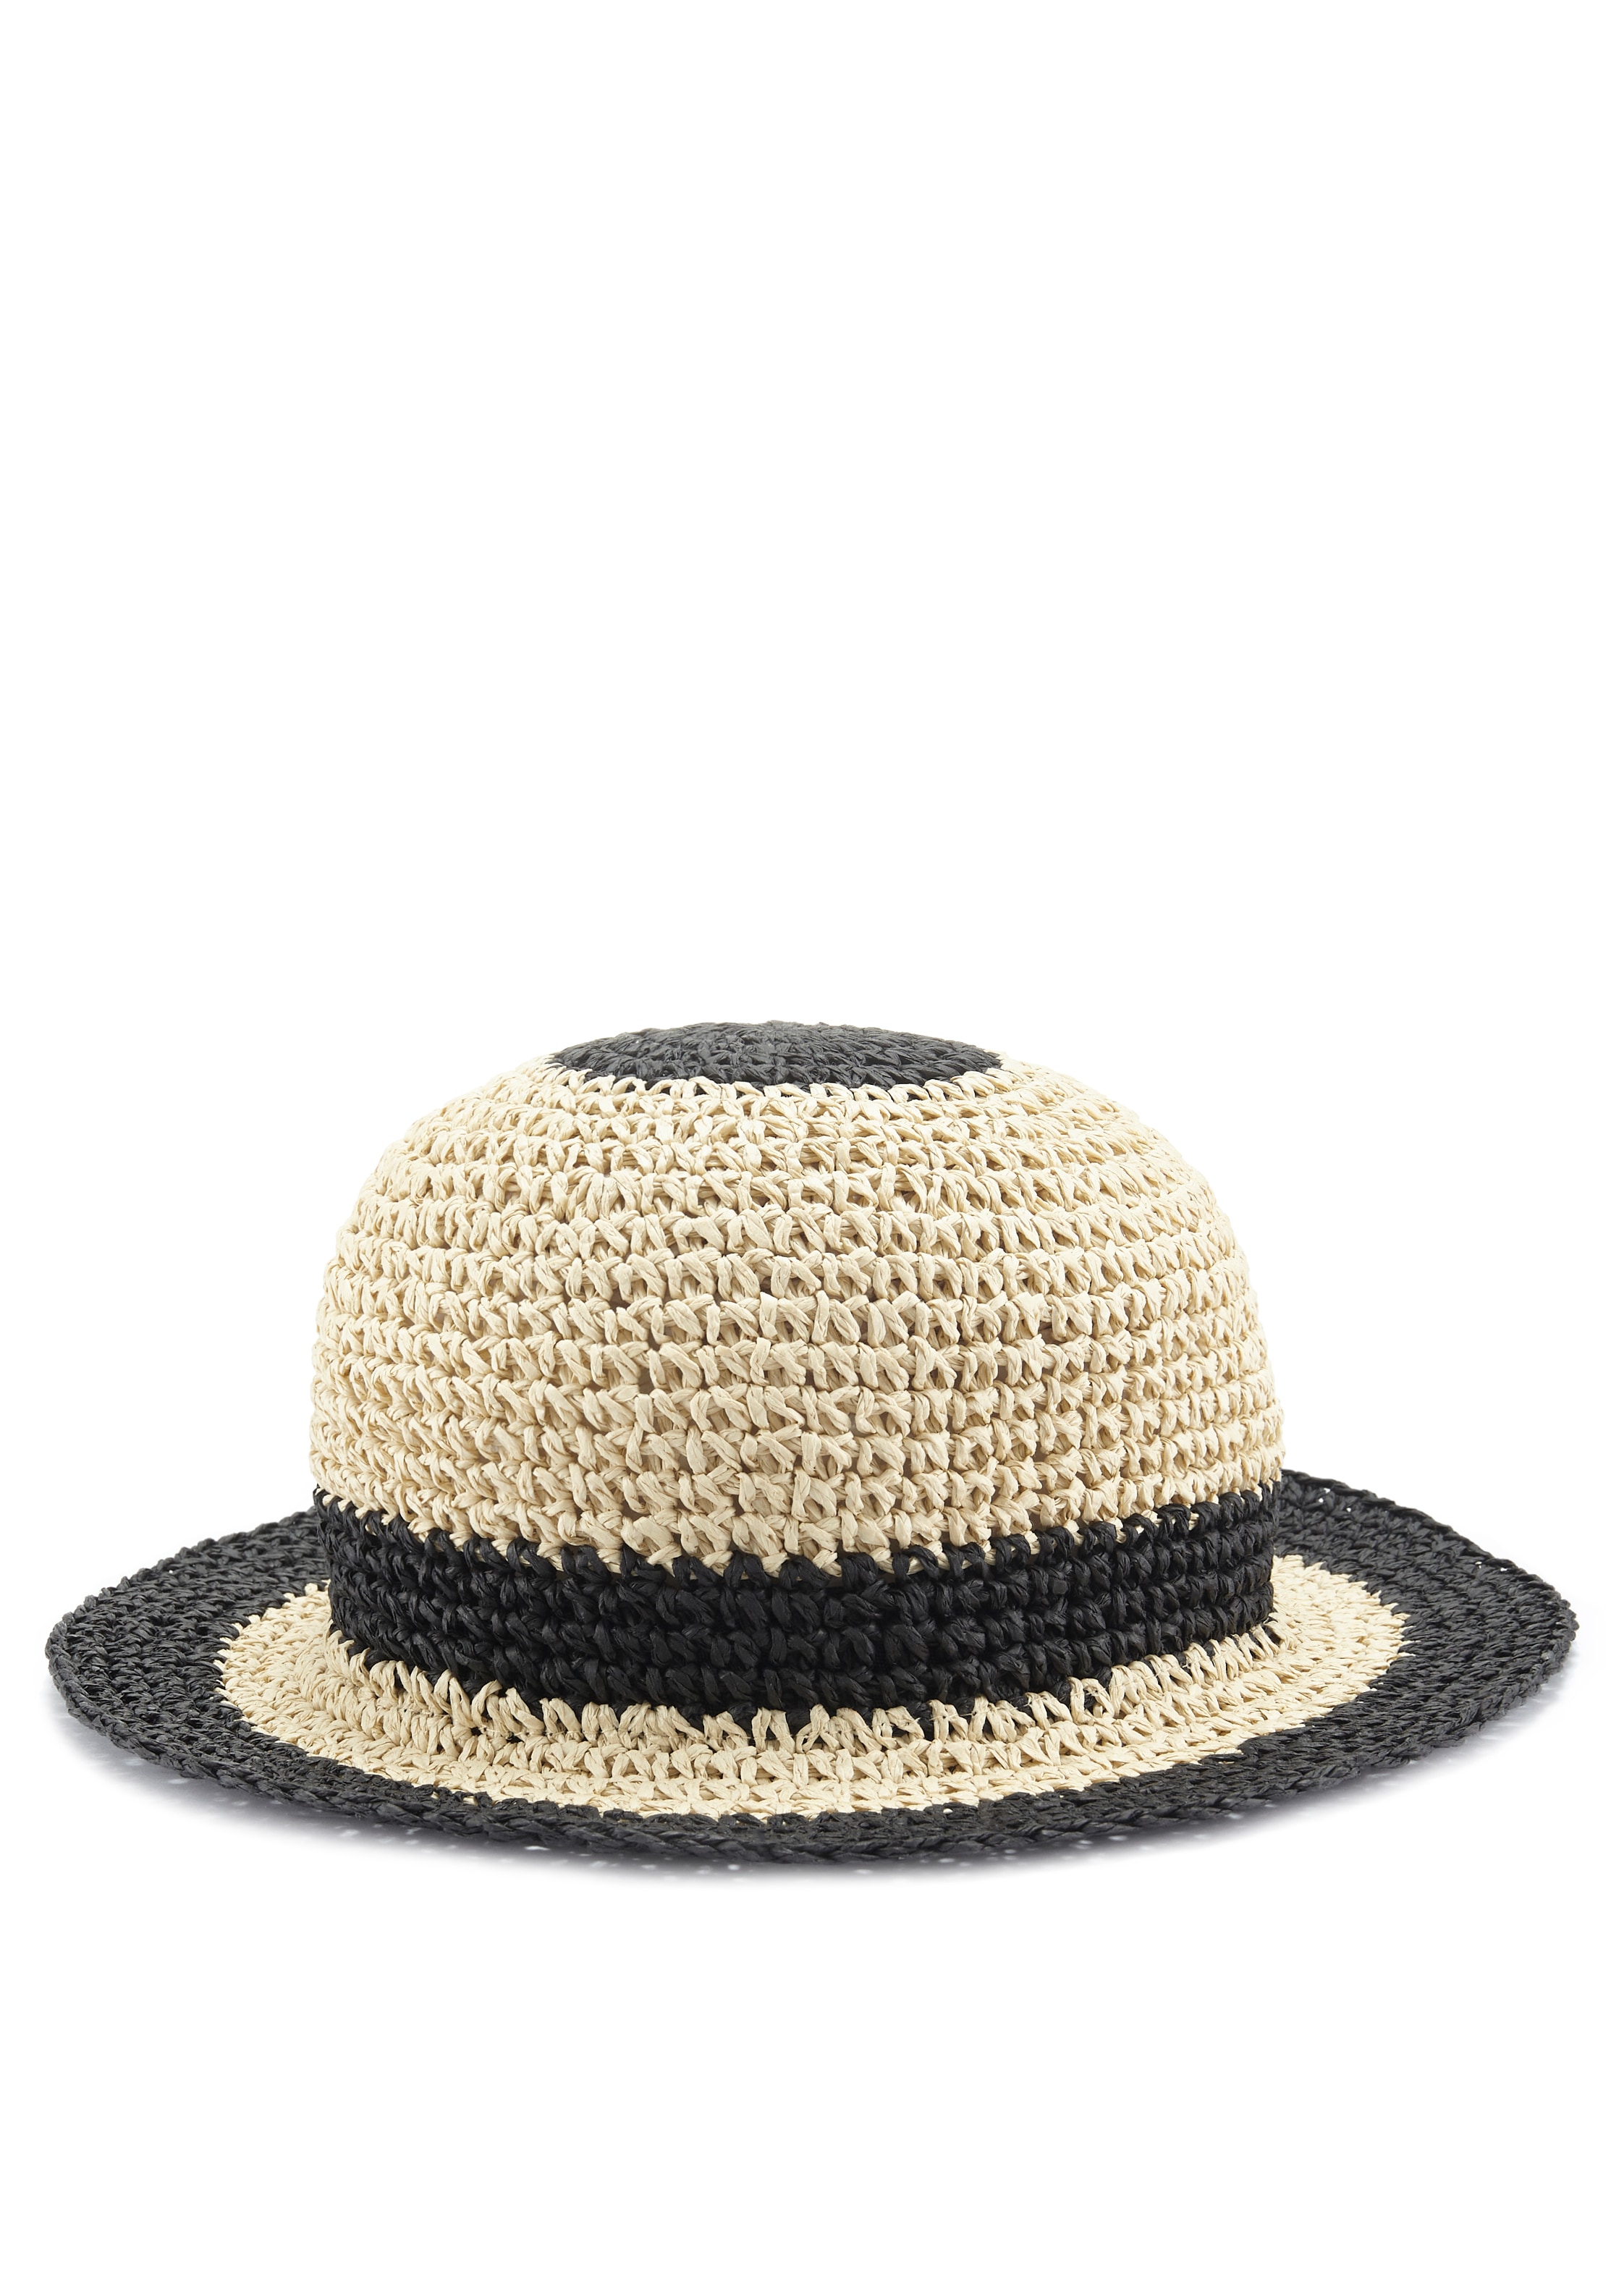 LASCANA Strohhut, Bucket Hat aus Stroh, Sommerhut, Kopfbedeckung VEGAN  online kaufen | UNIVERSAL